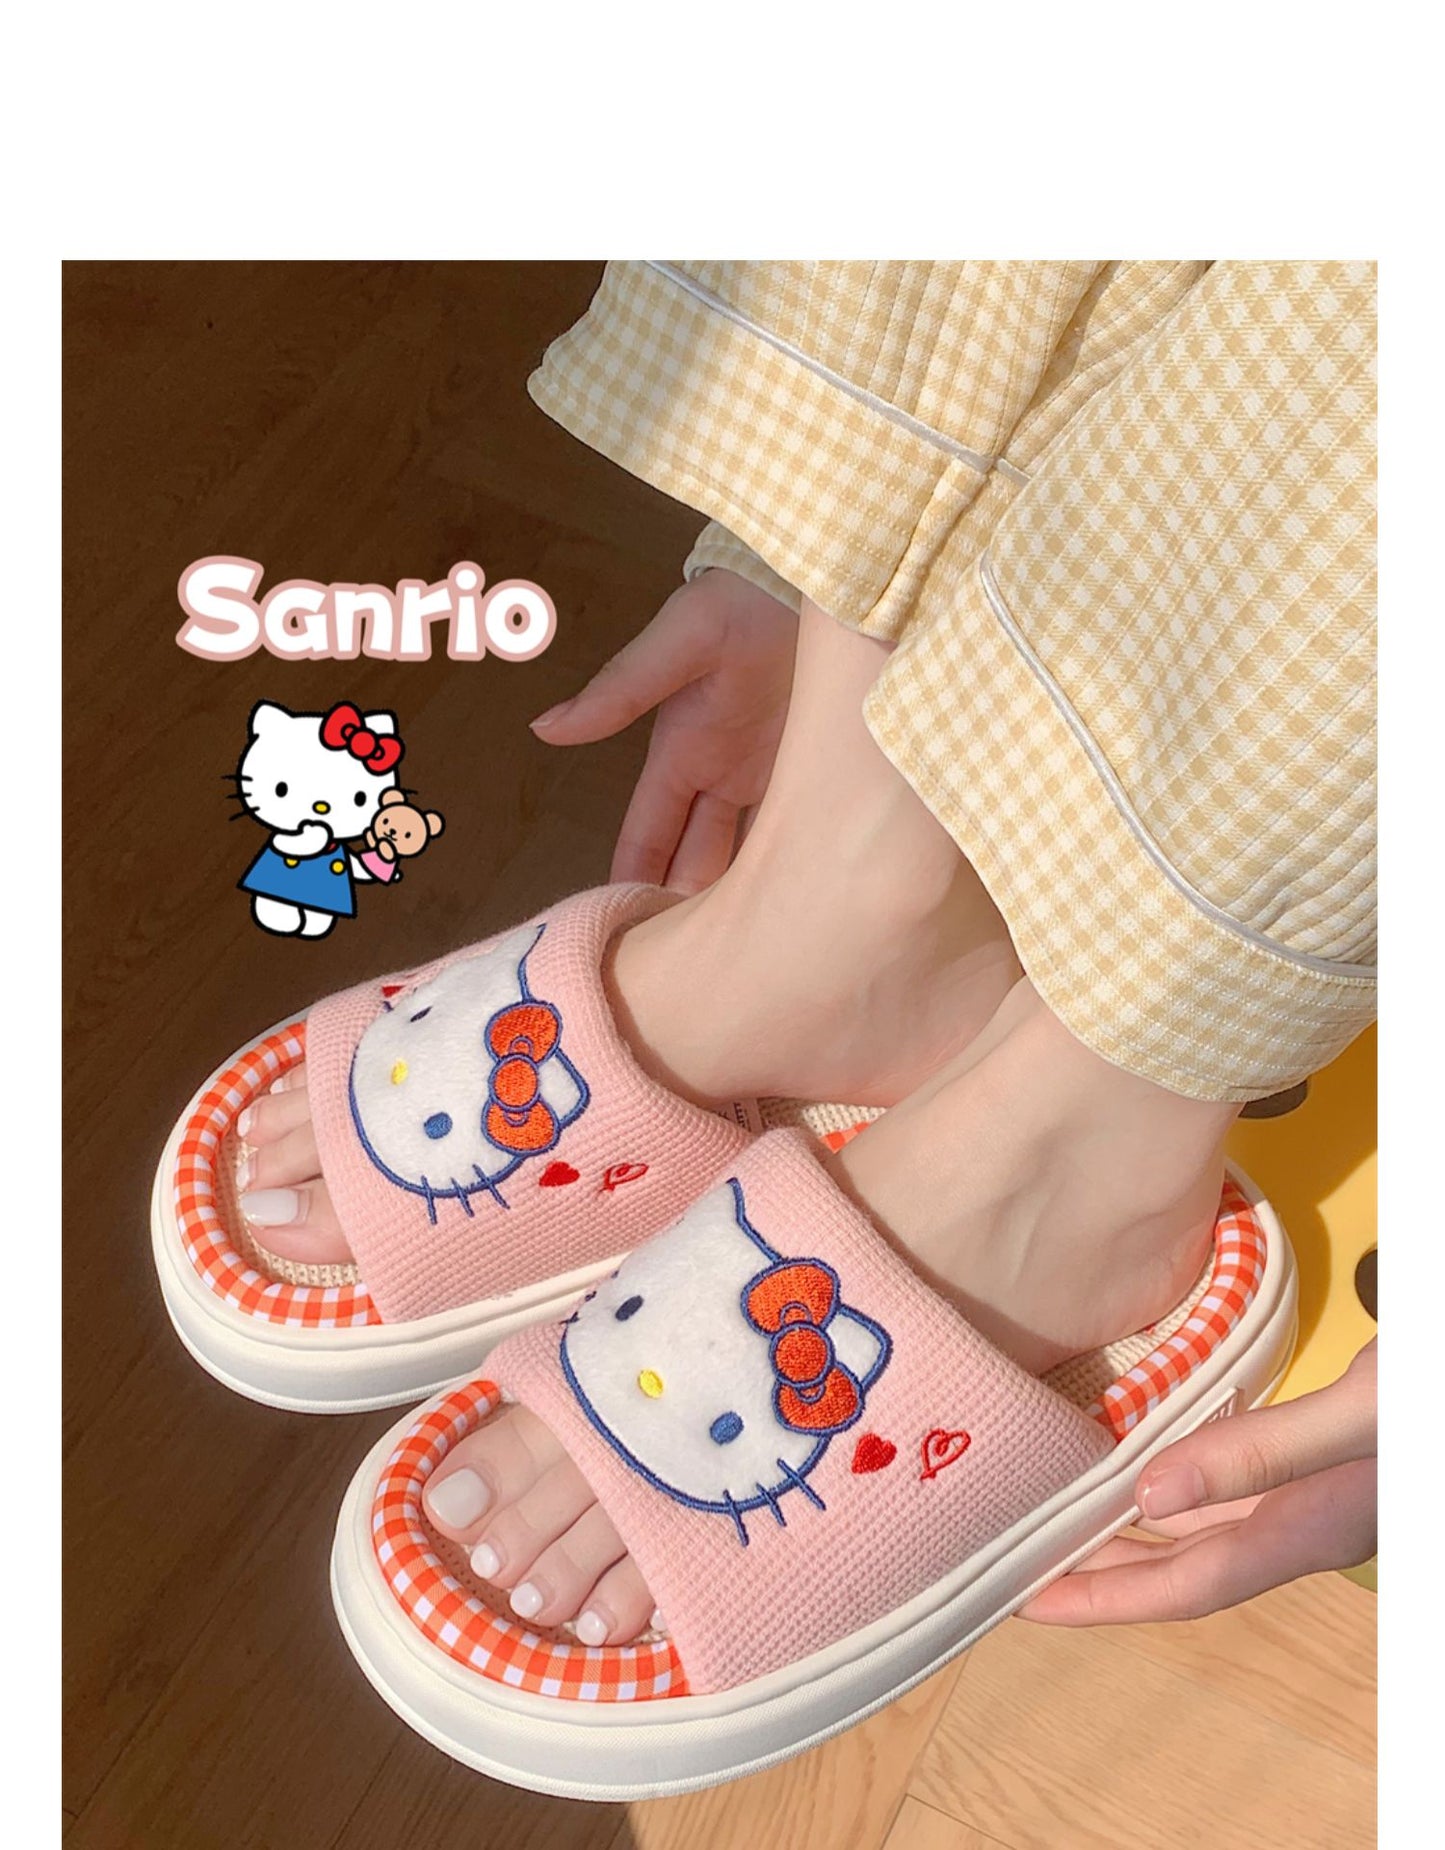 Sanrio Home  Platform Shoes